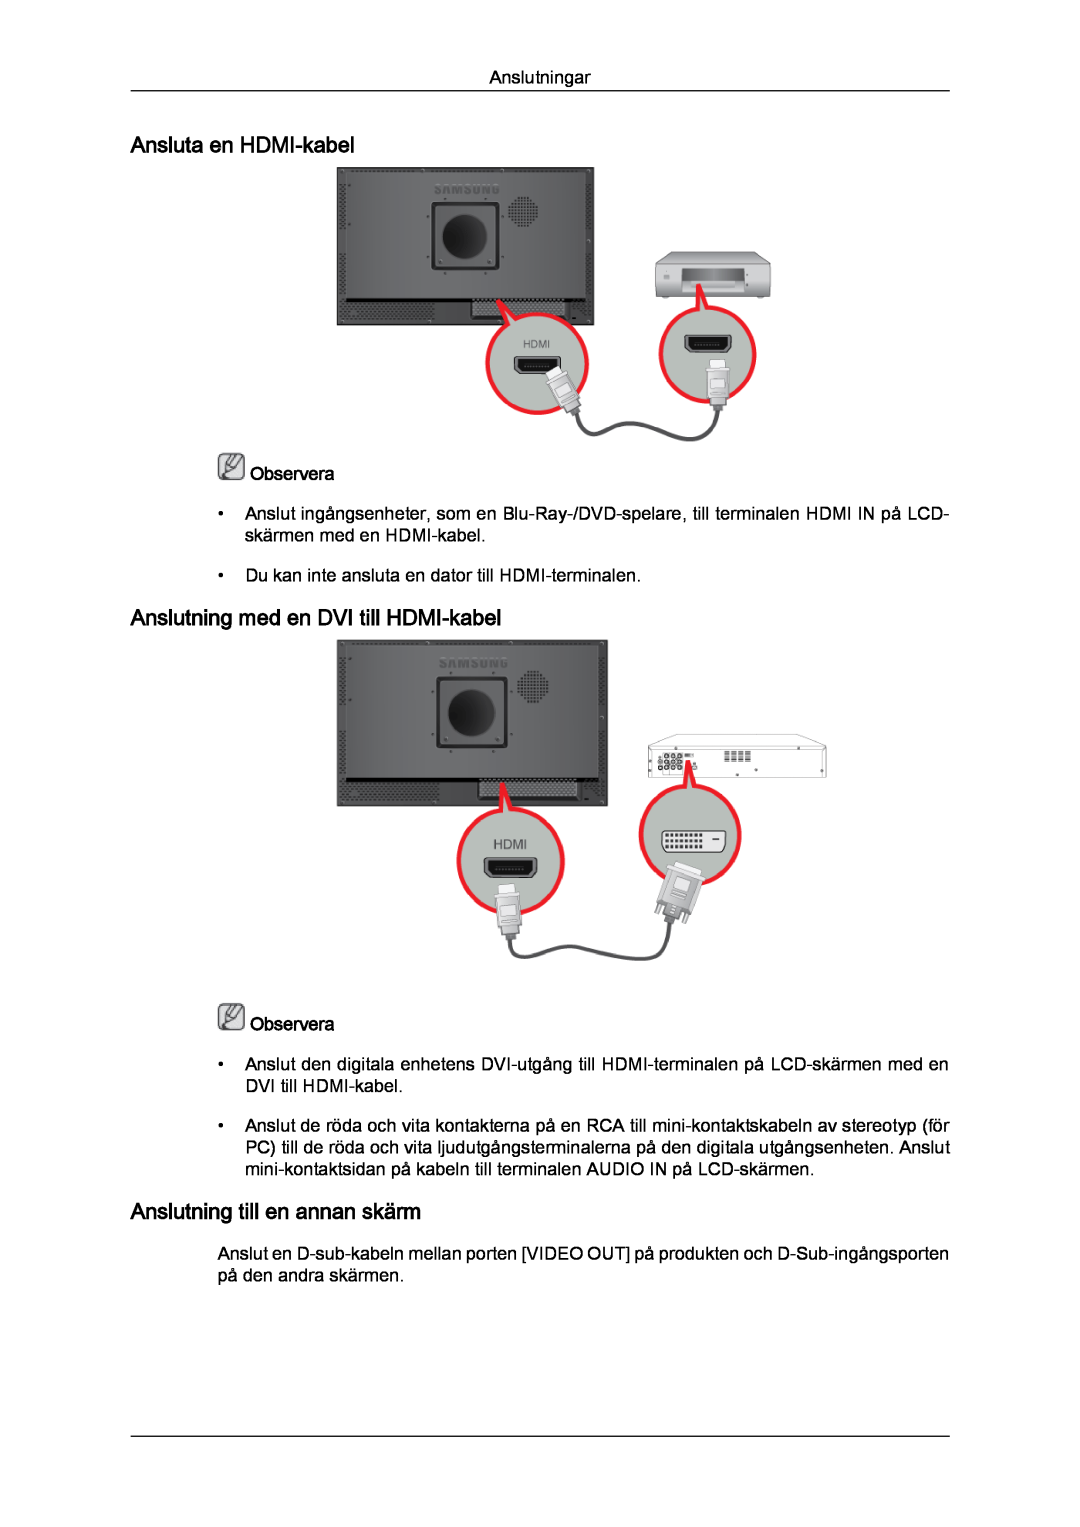 Samsung LH23PTSMBC/EN manual Ansluta en HDMI-kabel, Anslutning med en DVI till HDMI-kabel, Anslutning till en annan skärm 